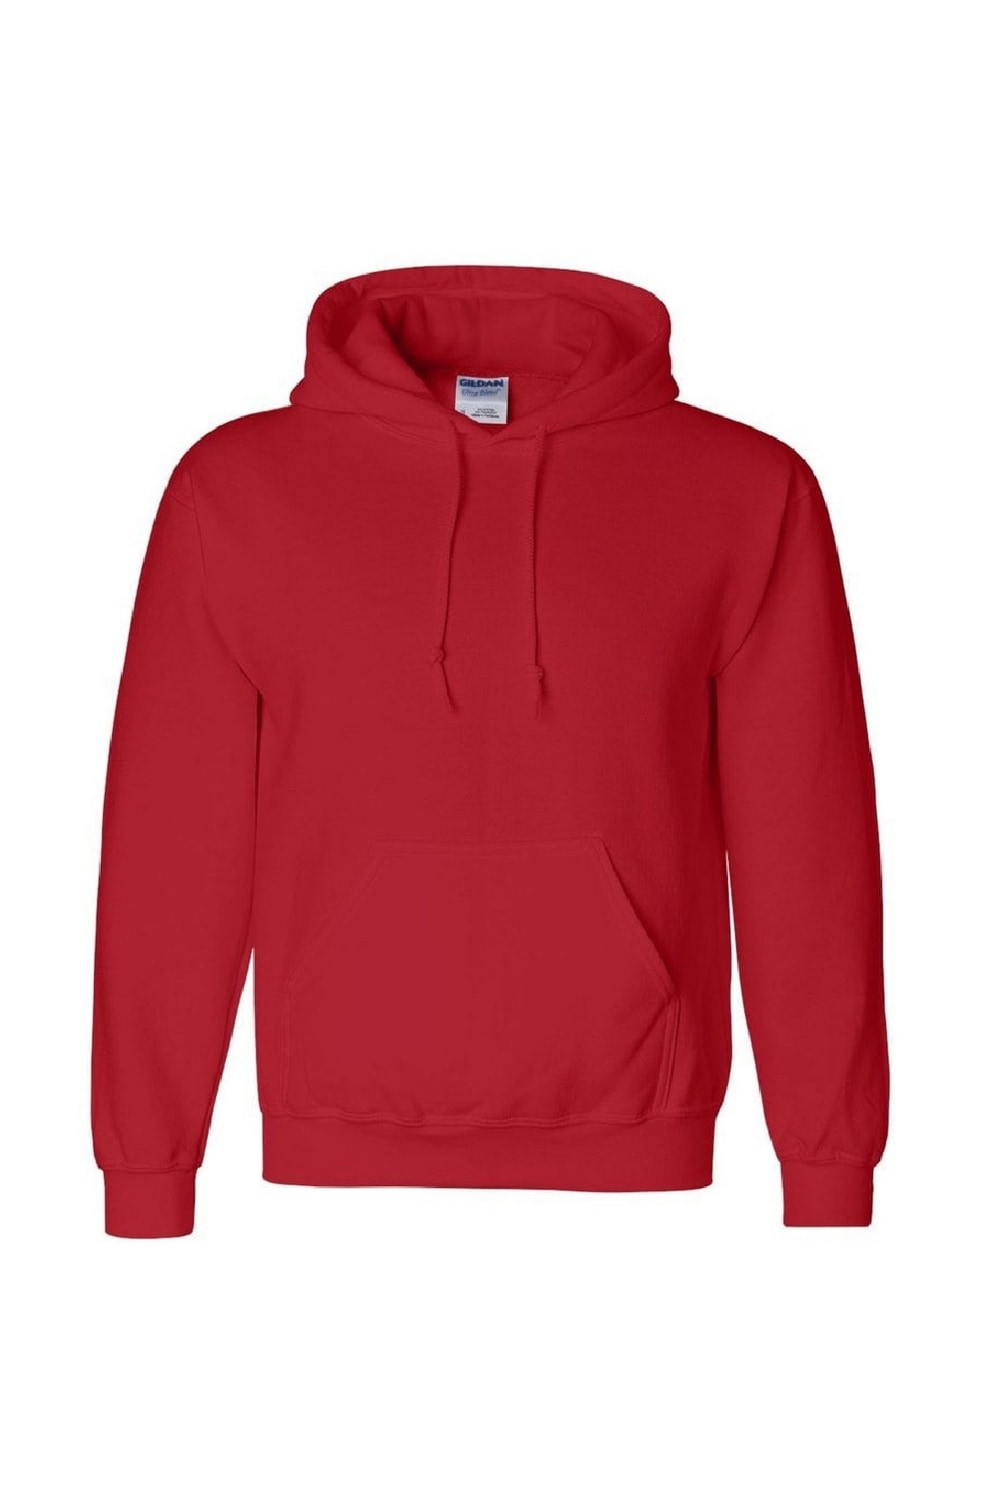 Gildan Heavyweight DryBlend Adult Unisex Hooded Sweatshirt Top / Hoodie (13 Colours) (Red)